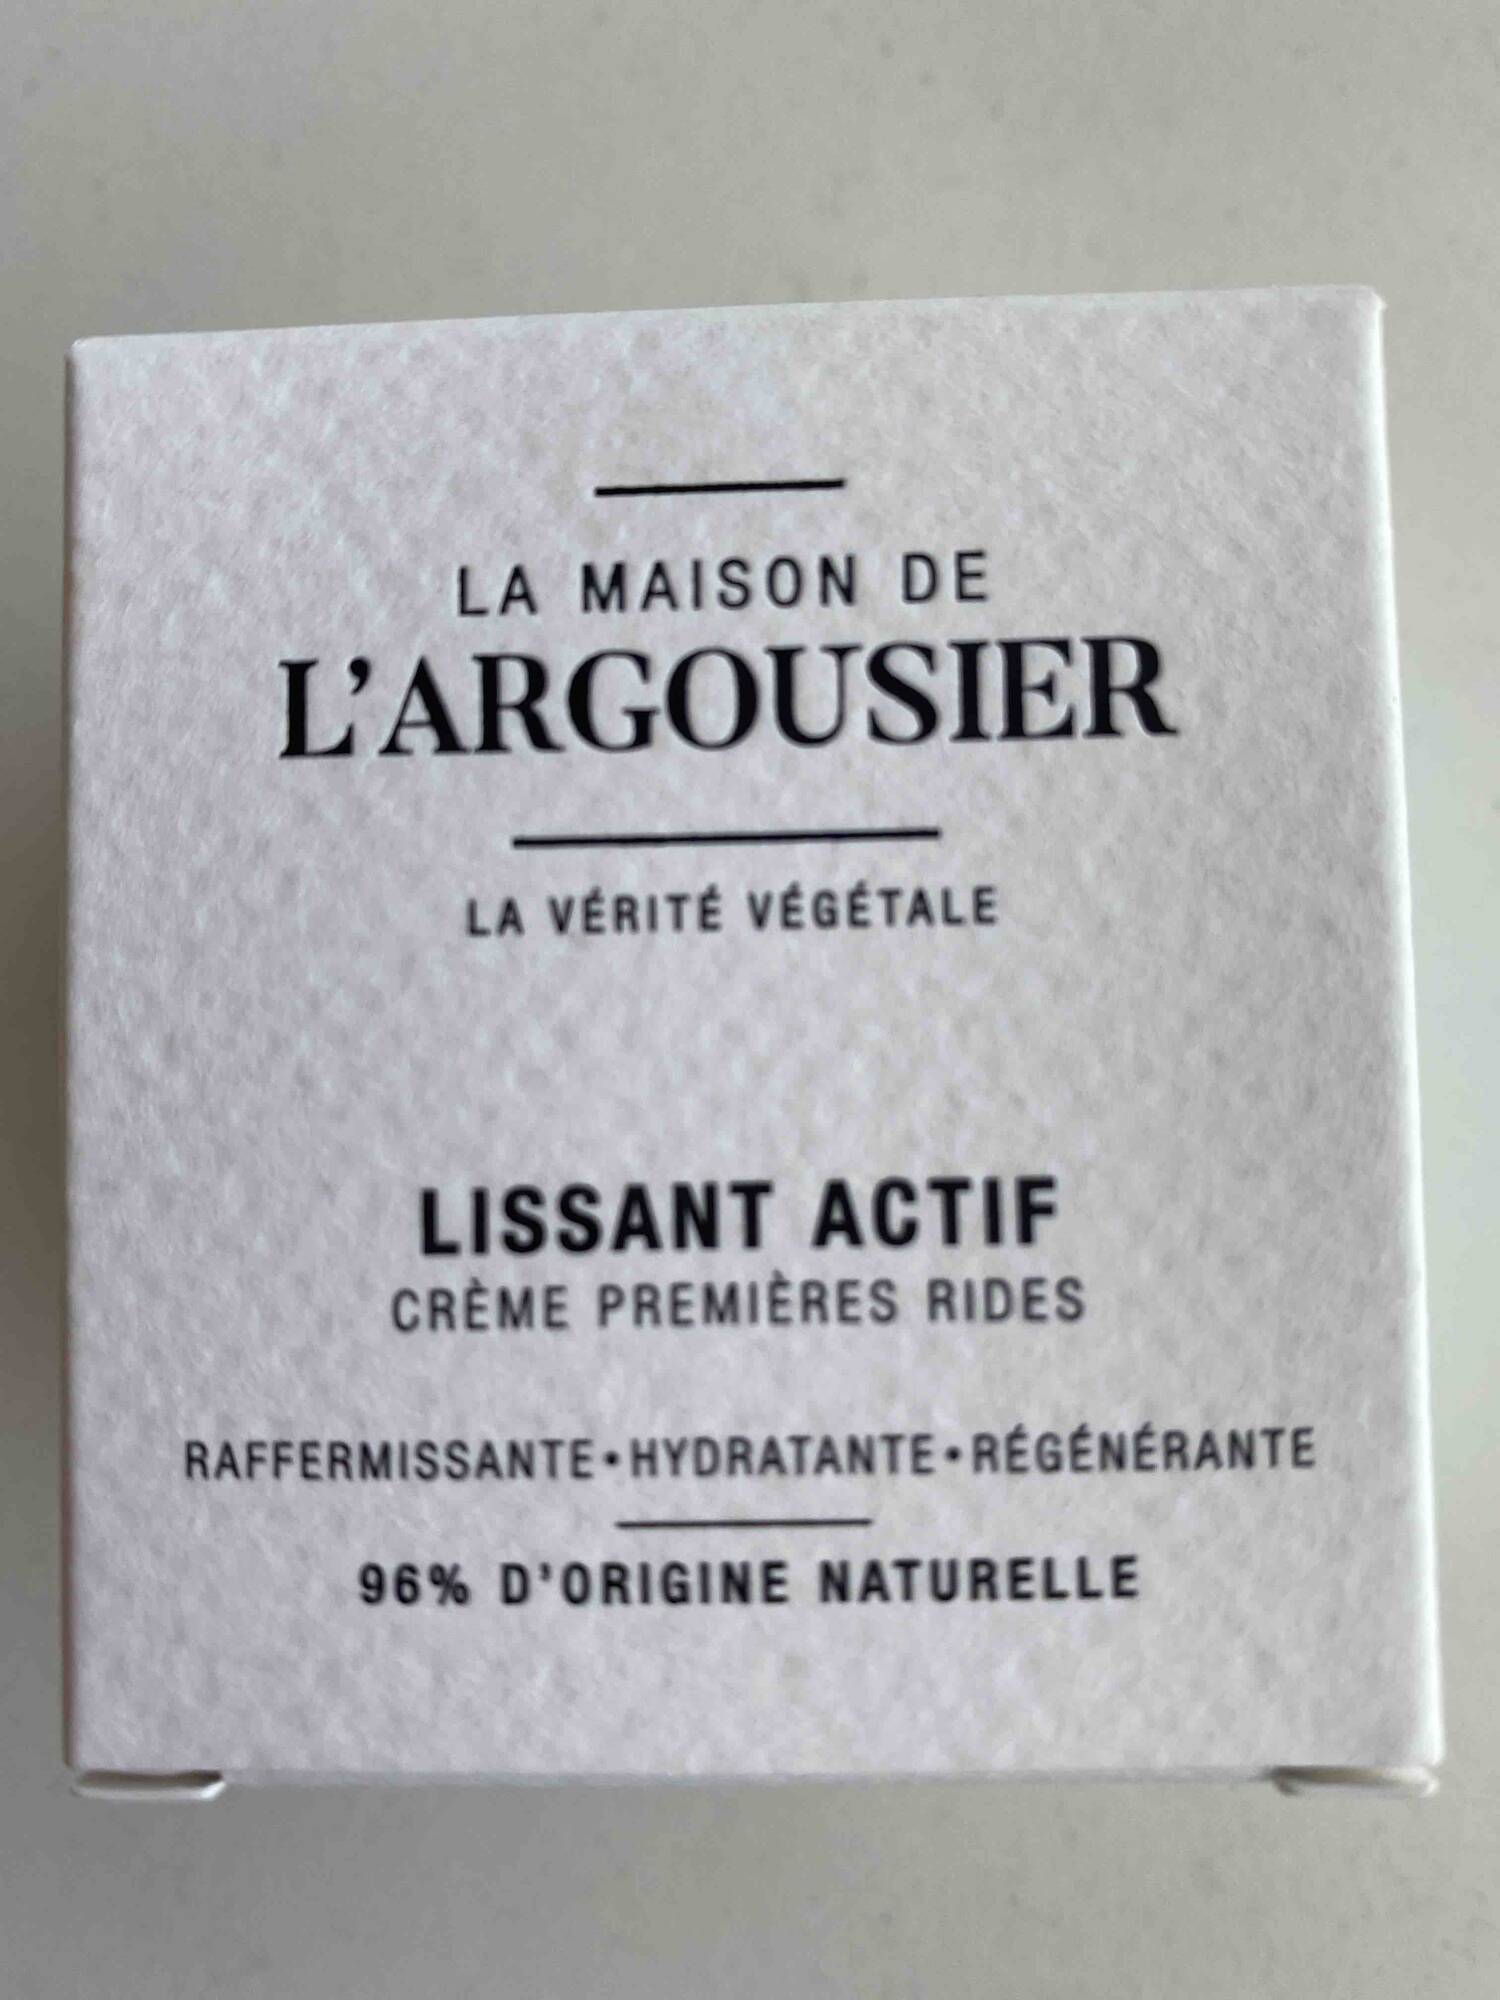 LA MAISON DE L'ARGOUSIER - Crème premières rides lissant actif 